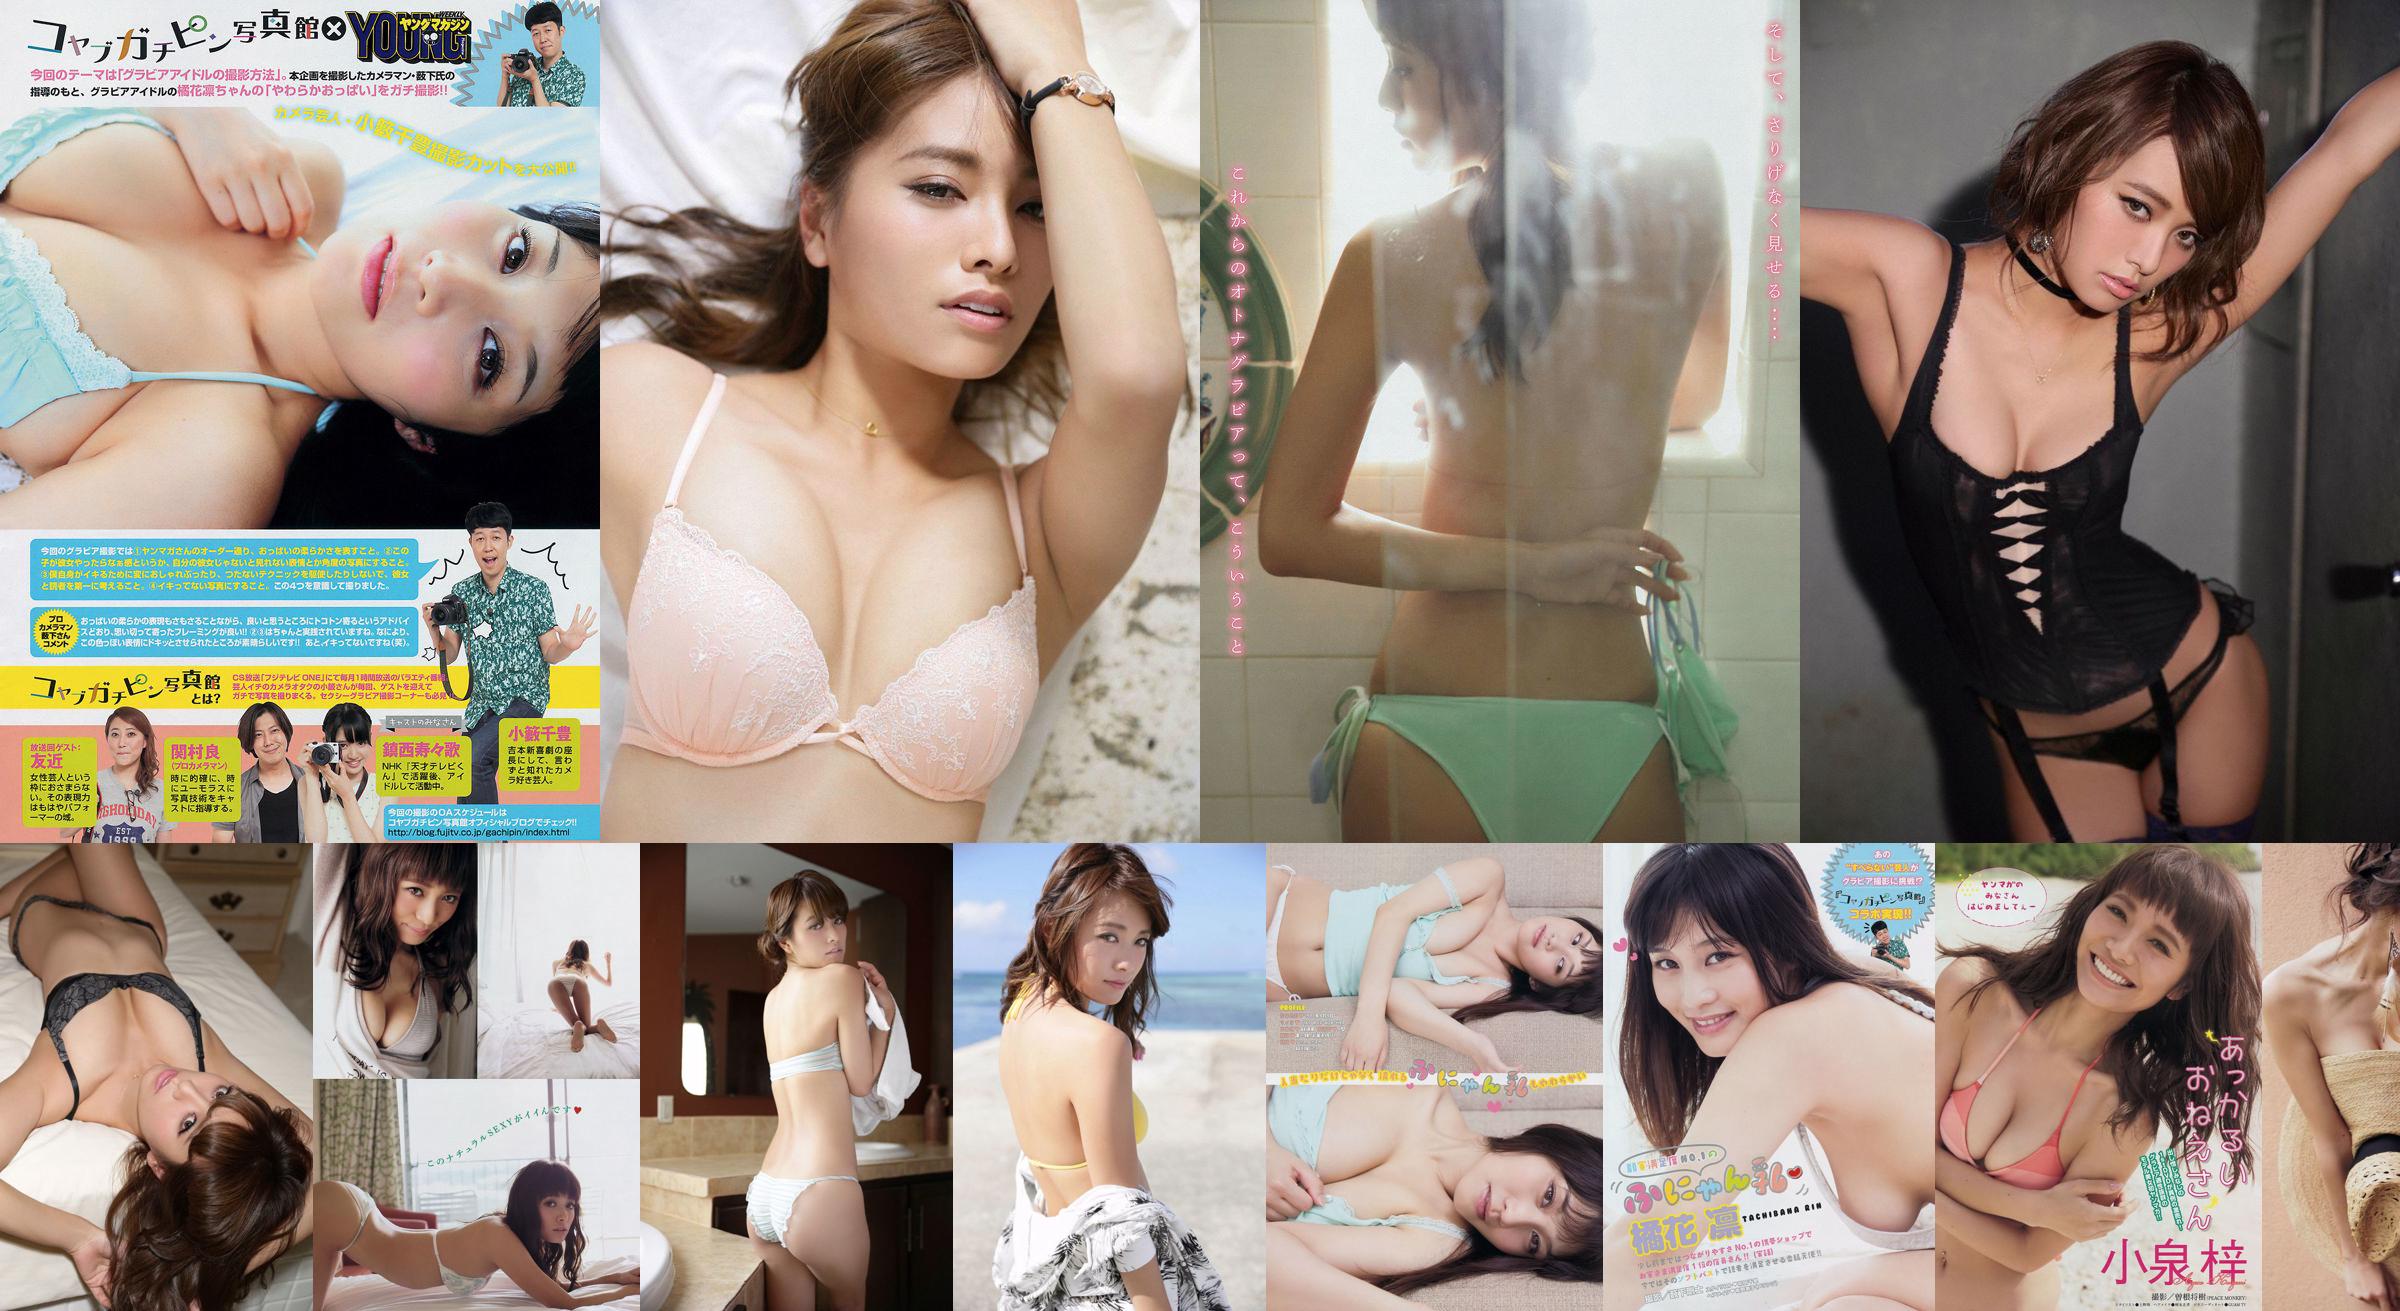 [Young Magazine] Azusa Koizumi Tachibana Rin 2014 No.43 Photo Magazine No.b1f581 Page 4